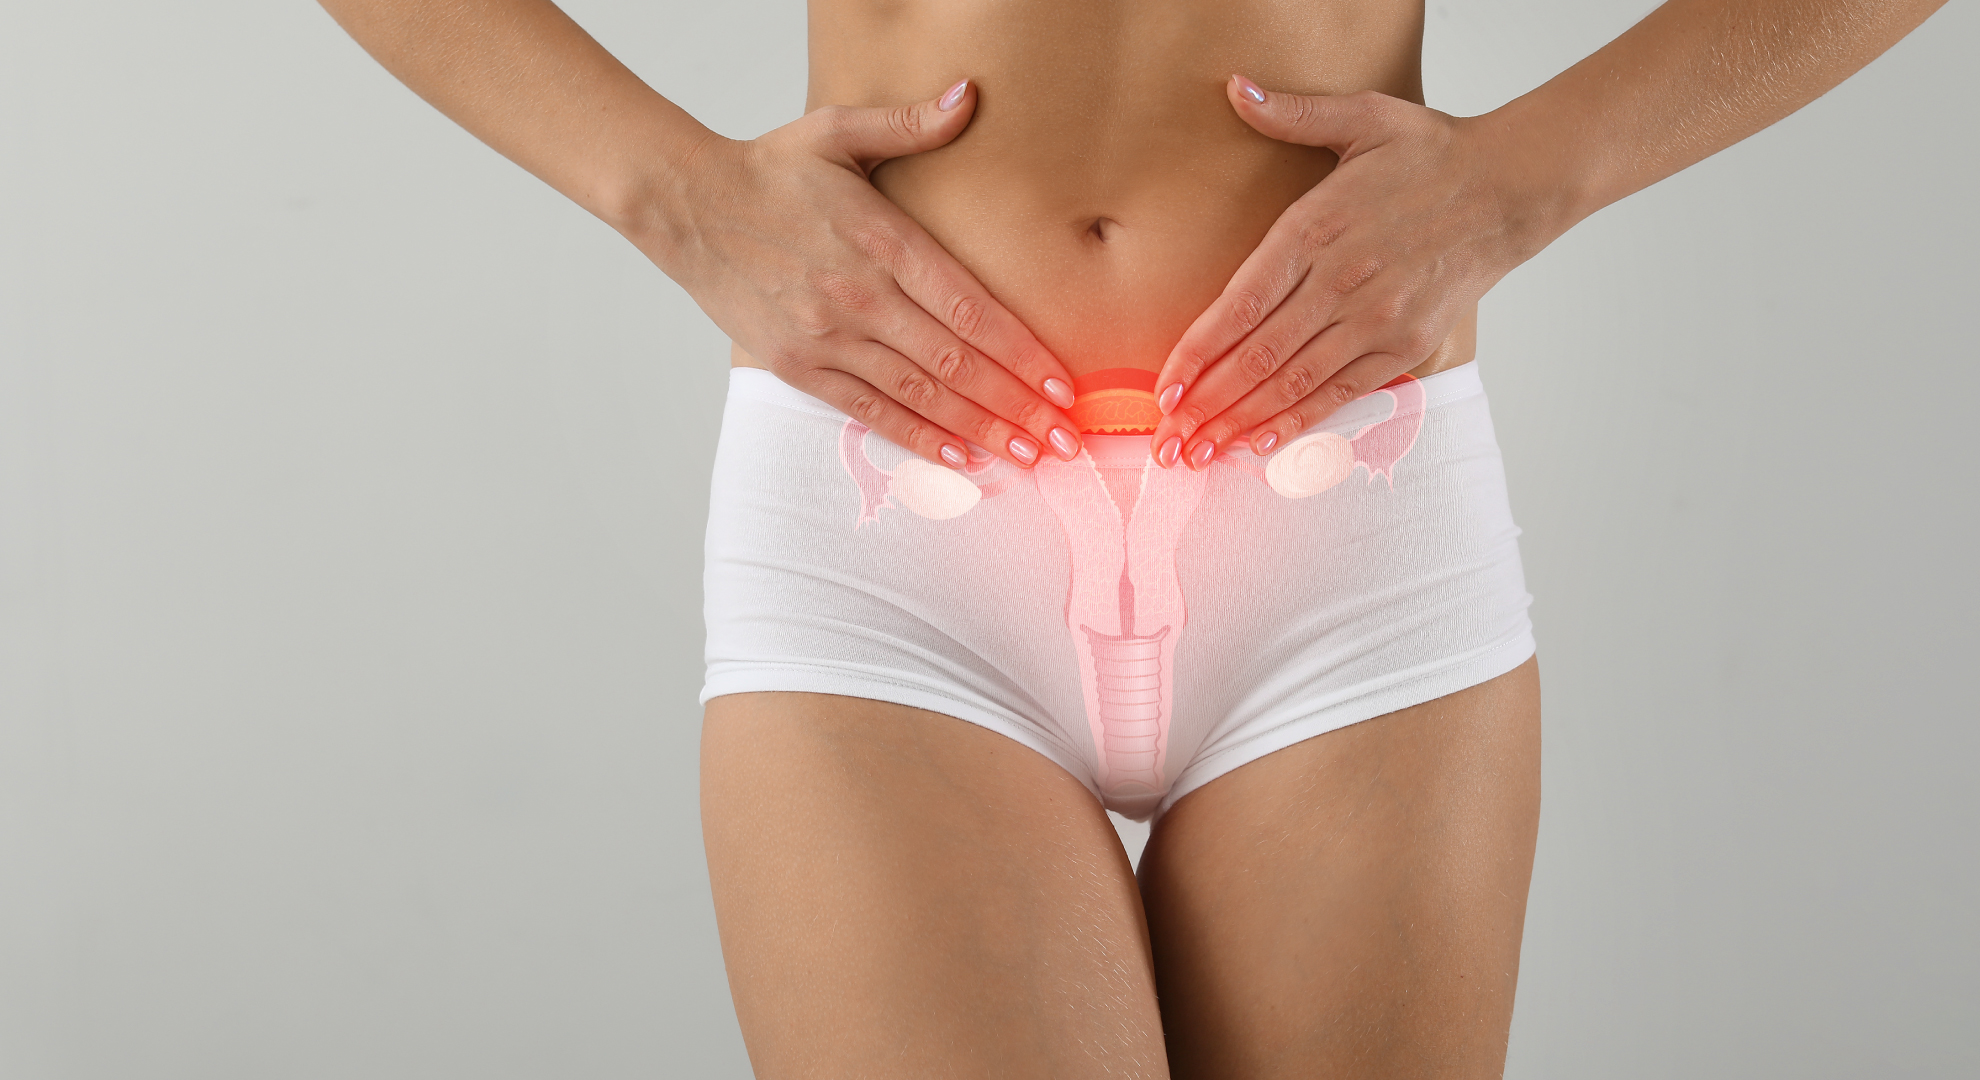 Hiperplasia endometrial pode levar ao Câncer de Endométrio